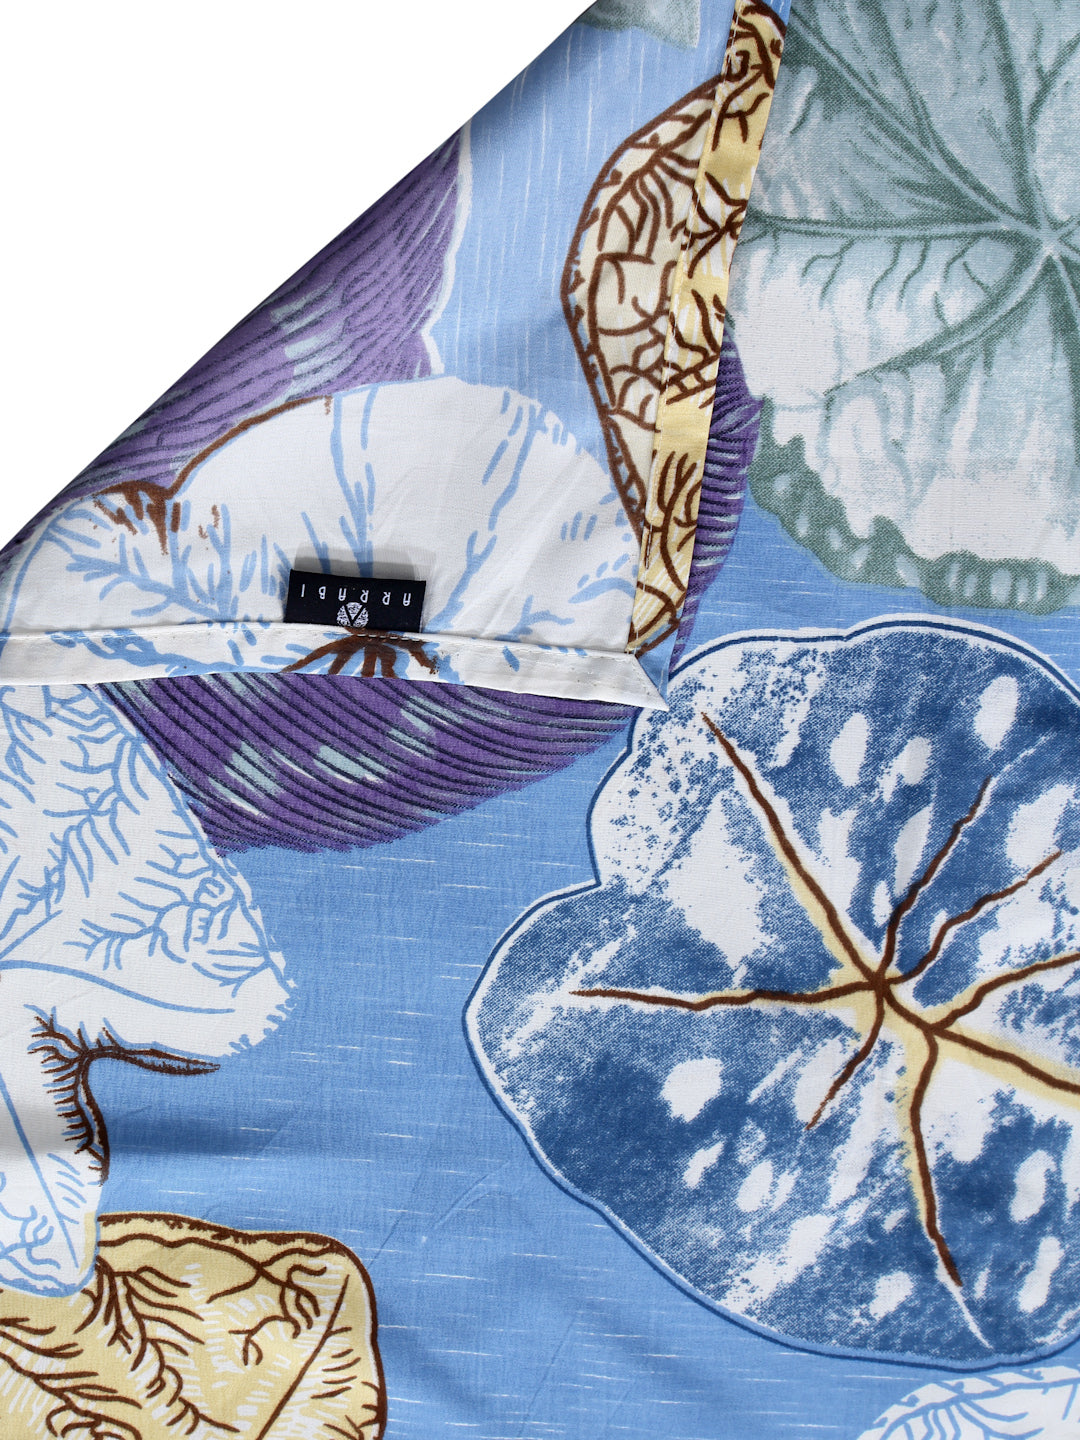 Arrabi Blue Leaf TC Cotton Blend Super King Size Bedsheet with 2 Pillow Covers (270 X 260 cm)